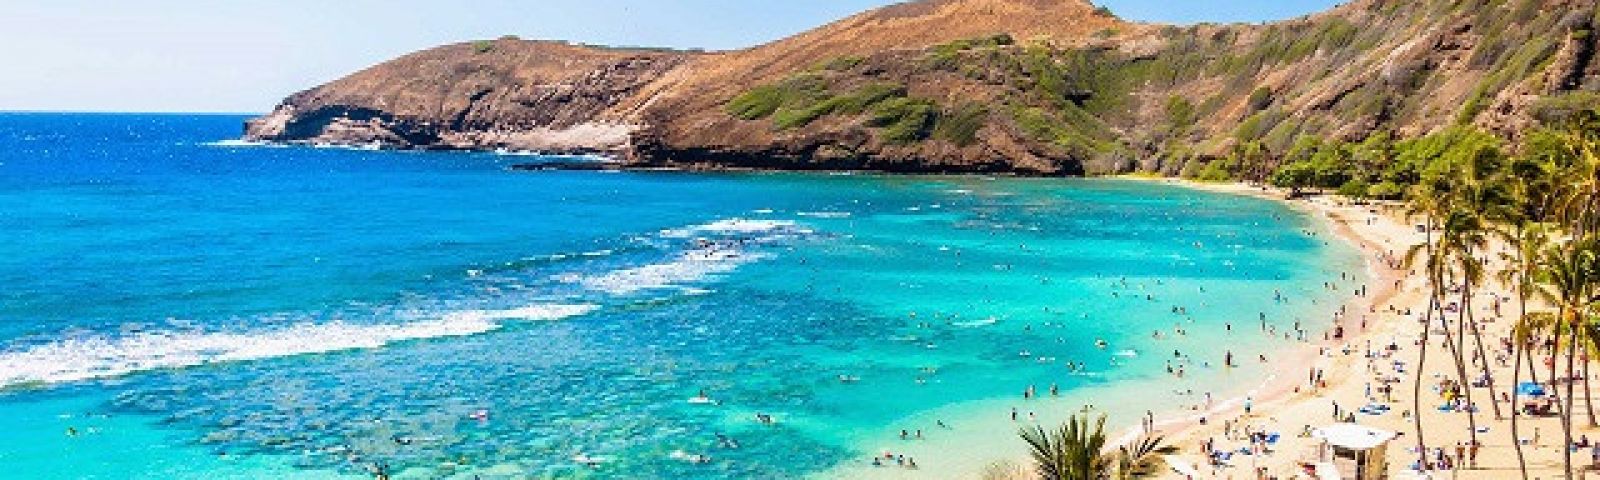 Tour Du Lịch Hawaii Trọn Gói Giá Rẻ Khởi Hành Từ Hà Nội 